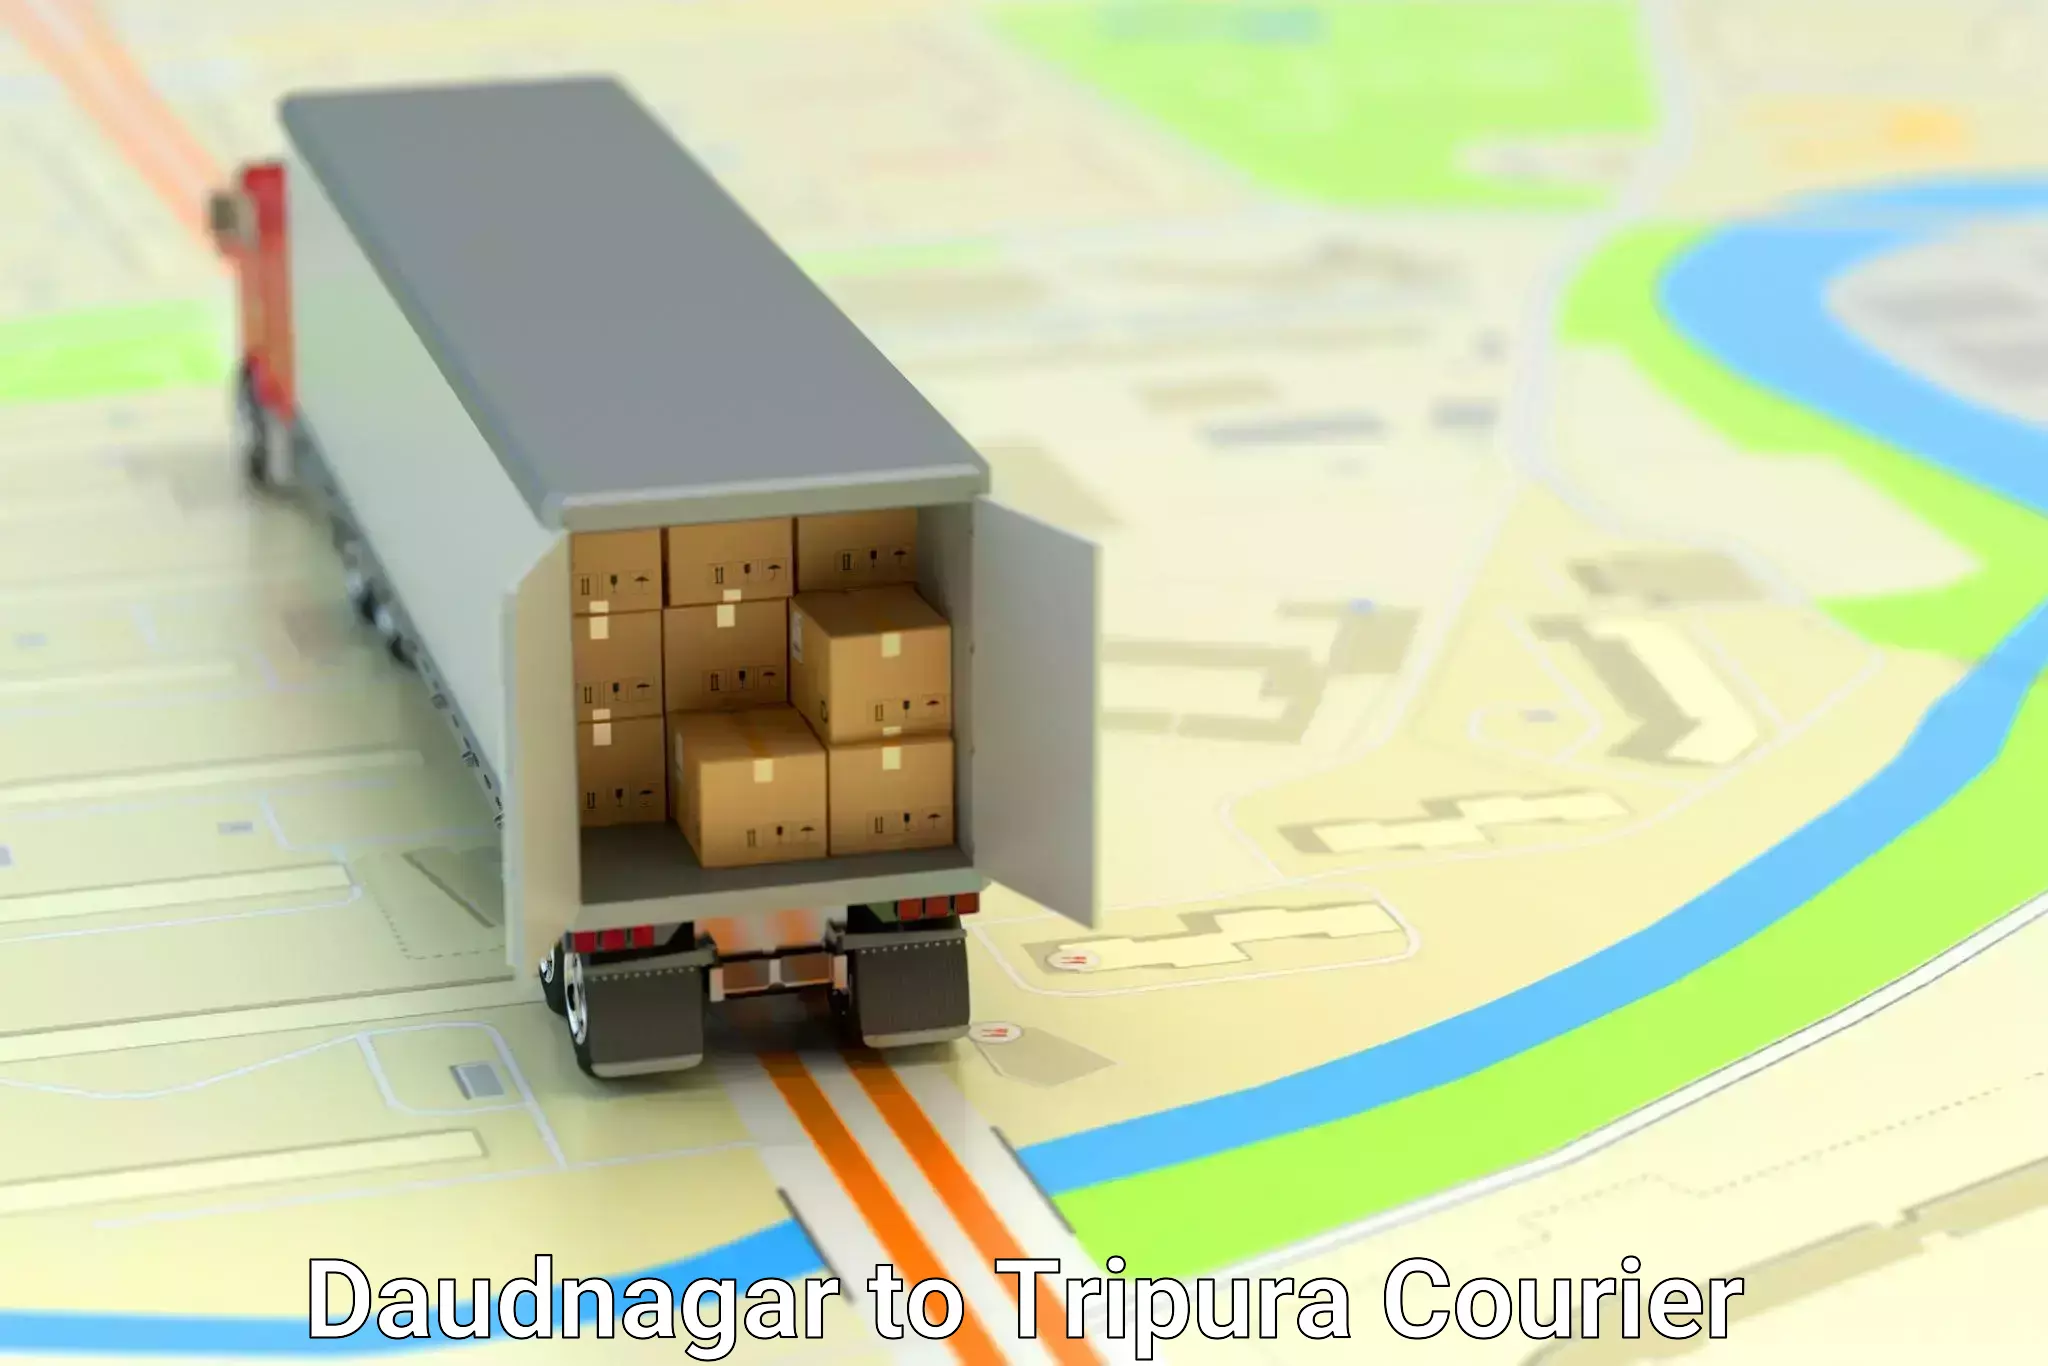 Furniture transport and logistics Daudnagar to Aambasa